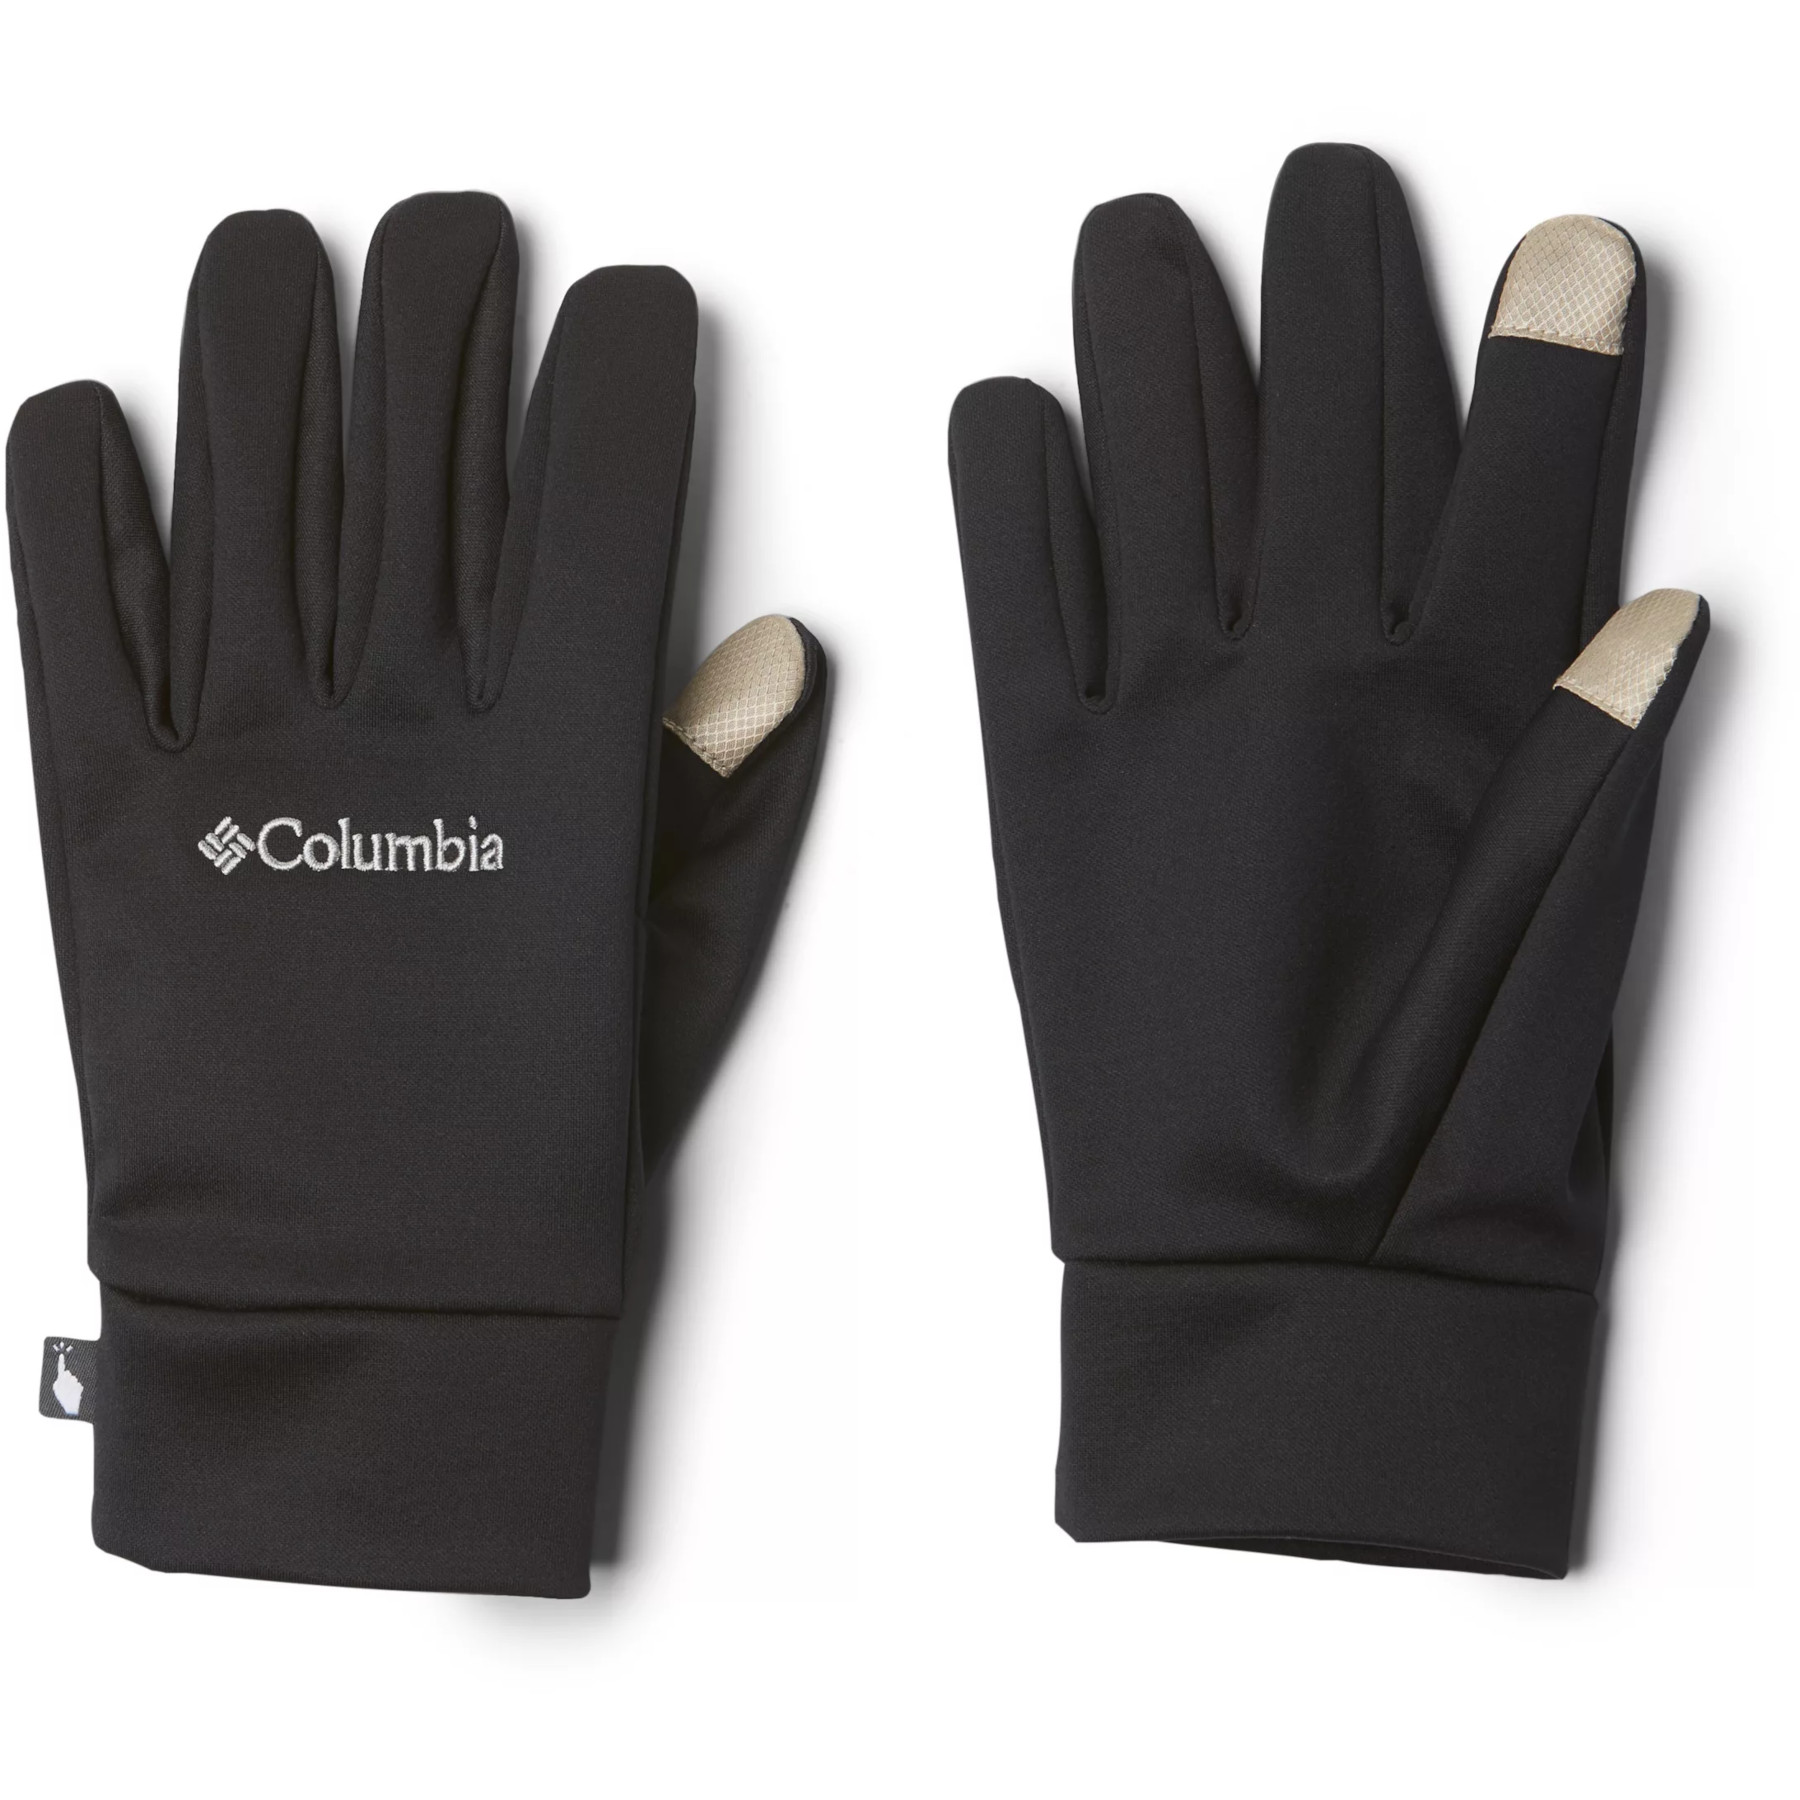 Produktbild von Columbia Omni-Heat Touch Liner Handschuhe - Schwarz